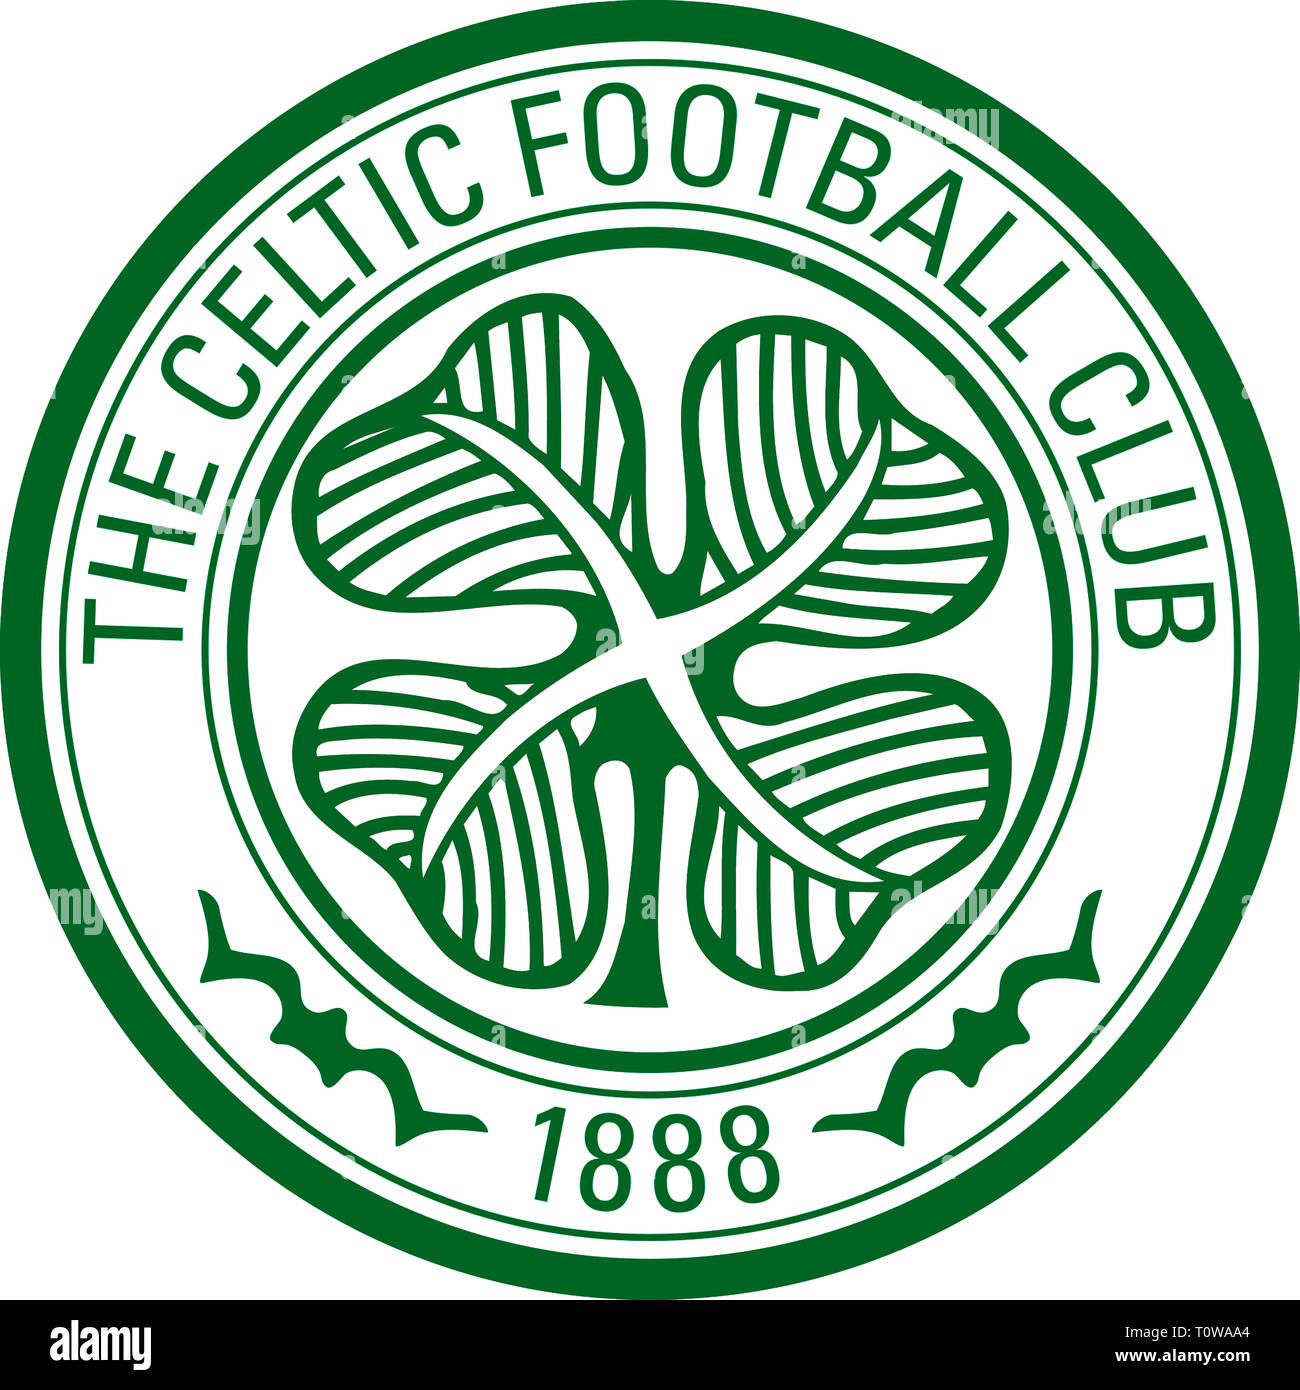 Vtg the celtic football - Gem